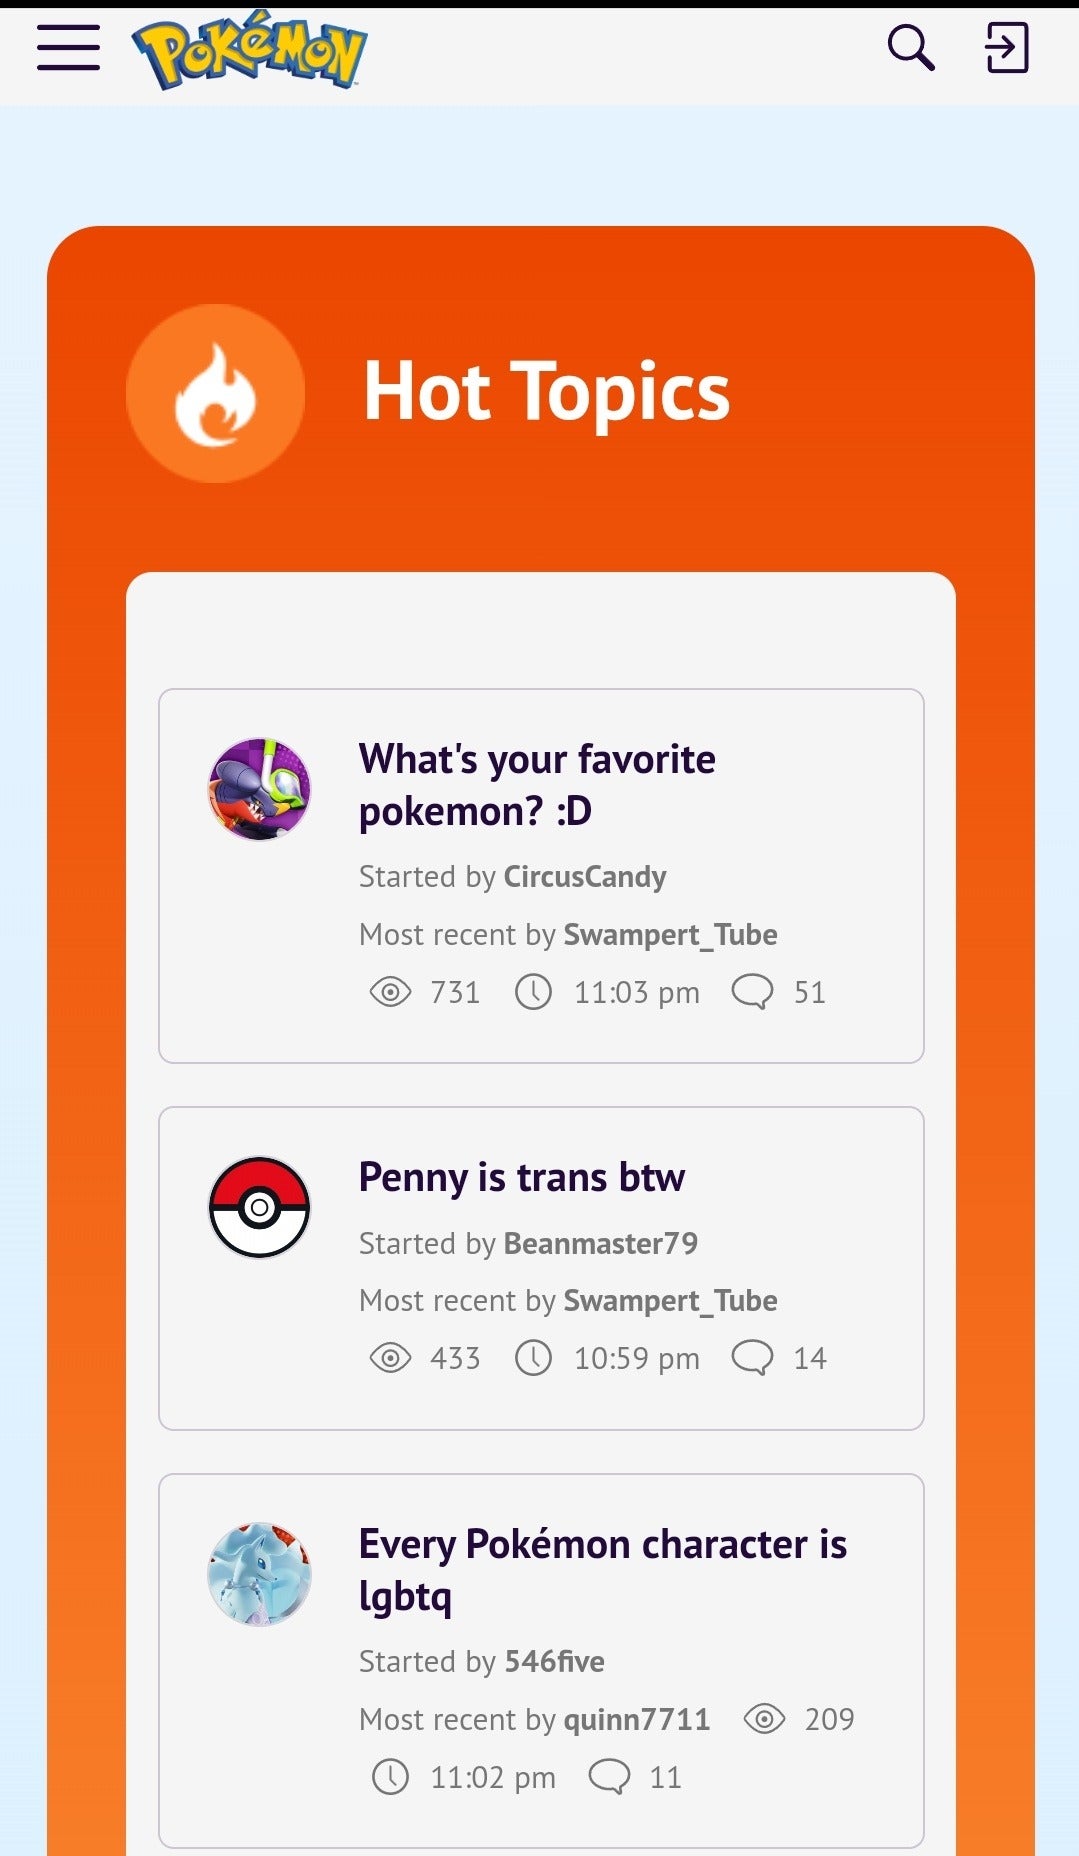 Forum konuları görüntülenir, dahil "bu arada kuruş çapraz," Ve "Her Pokémon karakteri LGBTTq'dir."